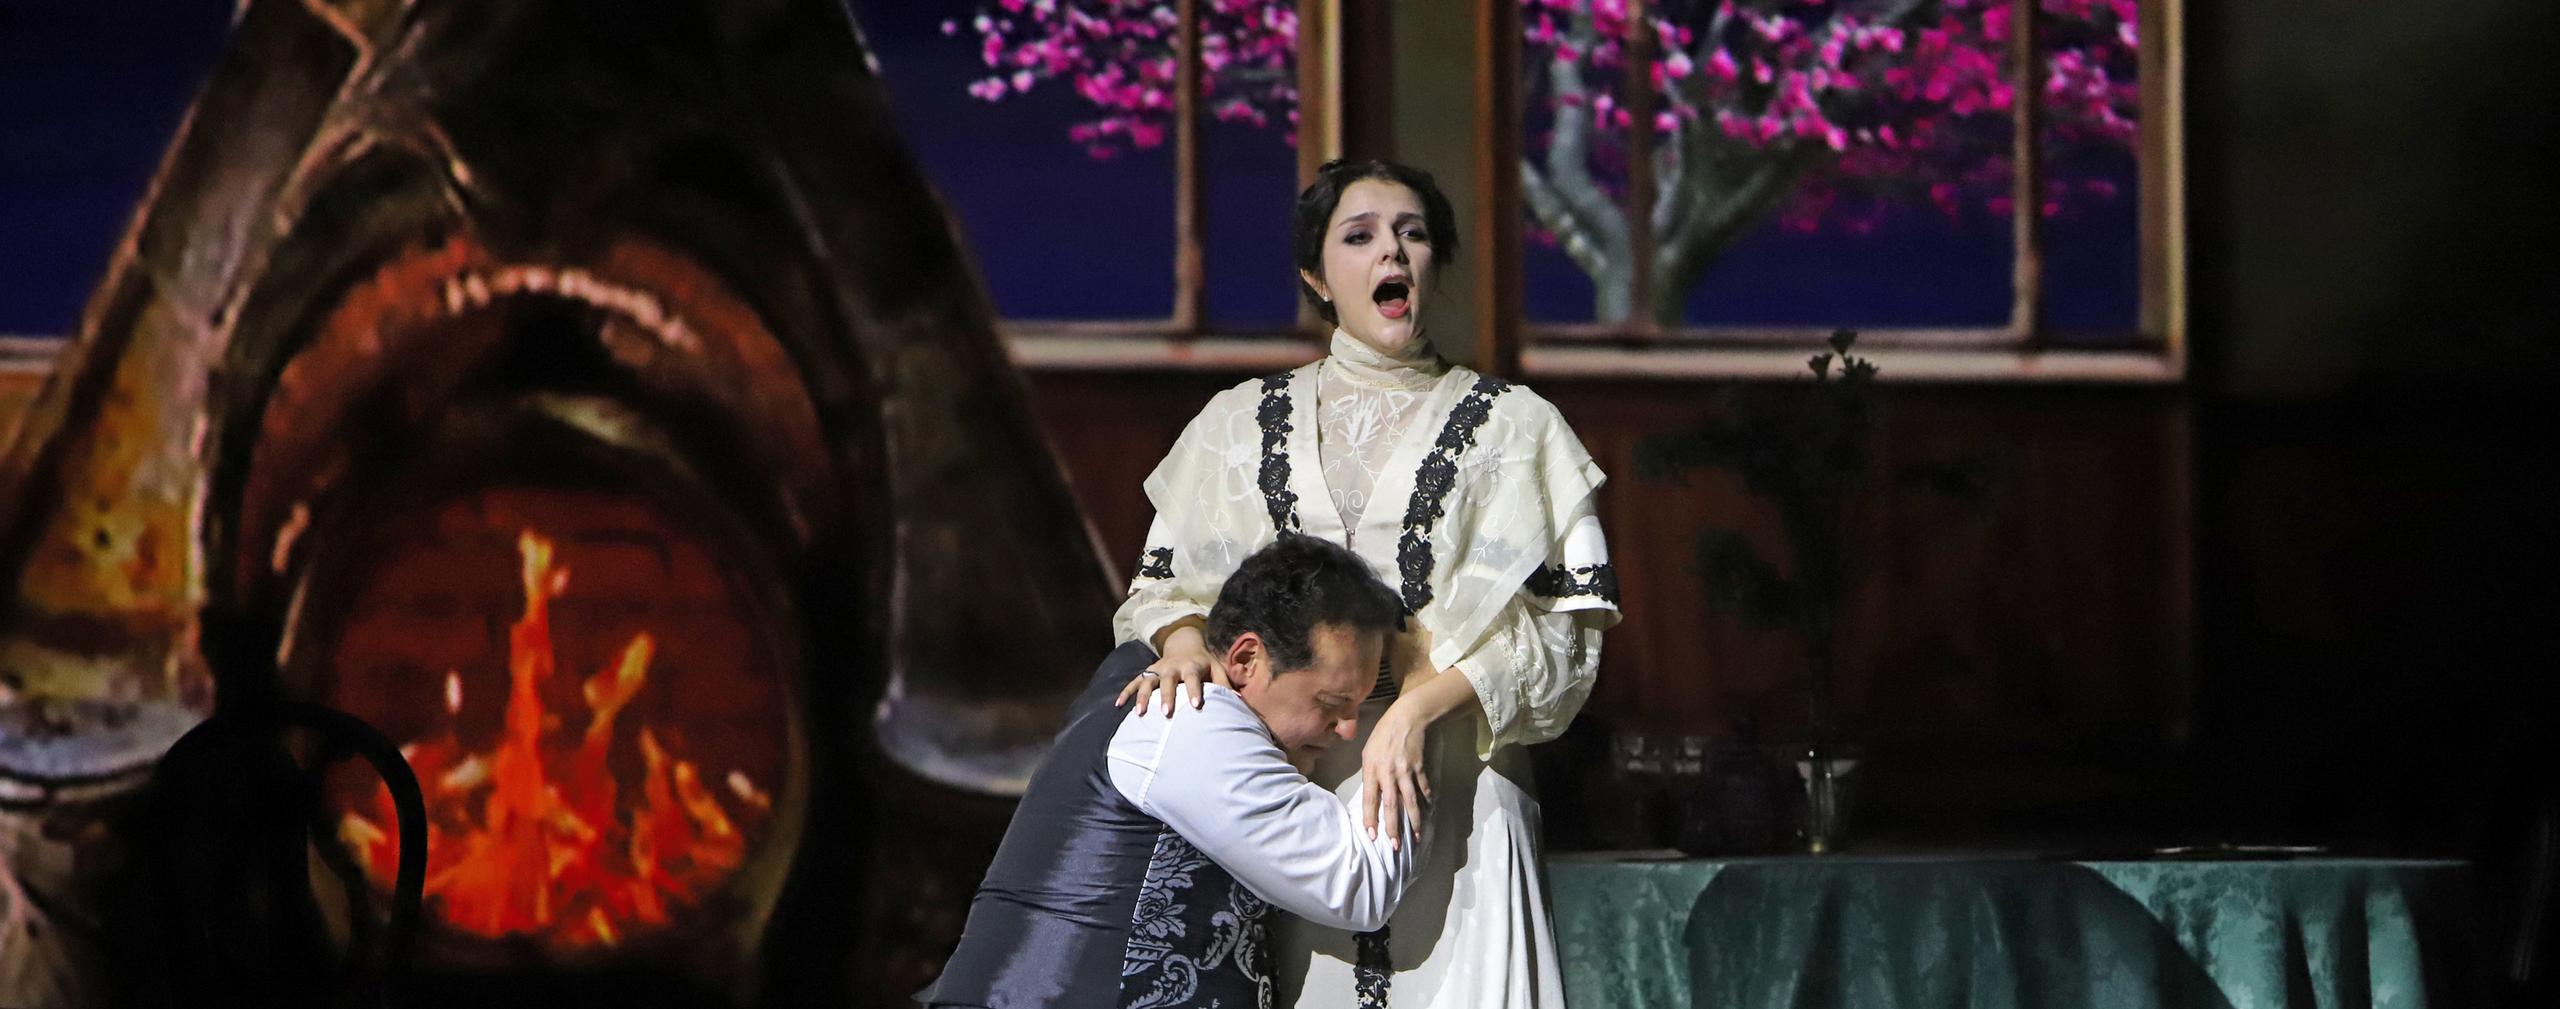 Duemila spettatori in tre recite: la "Traviata" al Teatro Galli fa il pienone - Geronimo News